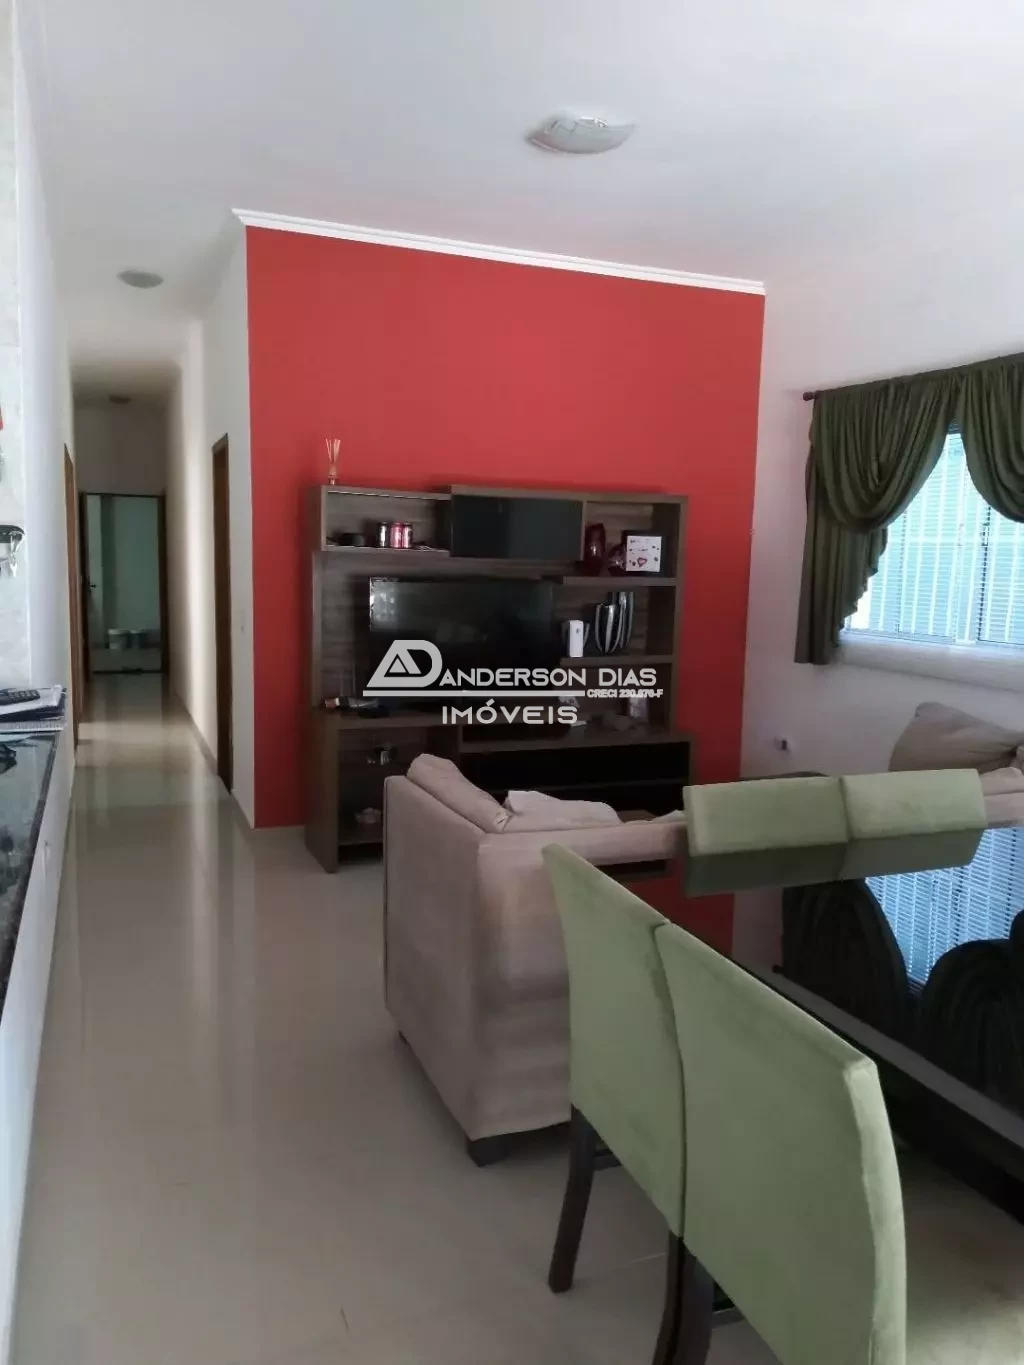 Casa com 3 dormitórios à venda, 250 m² por R$ 475.000 - Balneário Califórnia - Caraguatatuba/SP